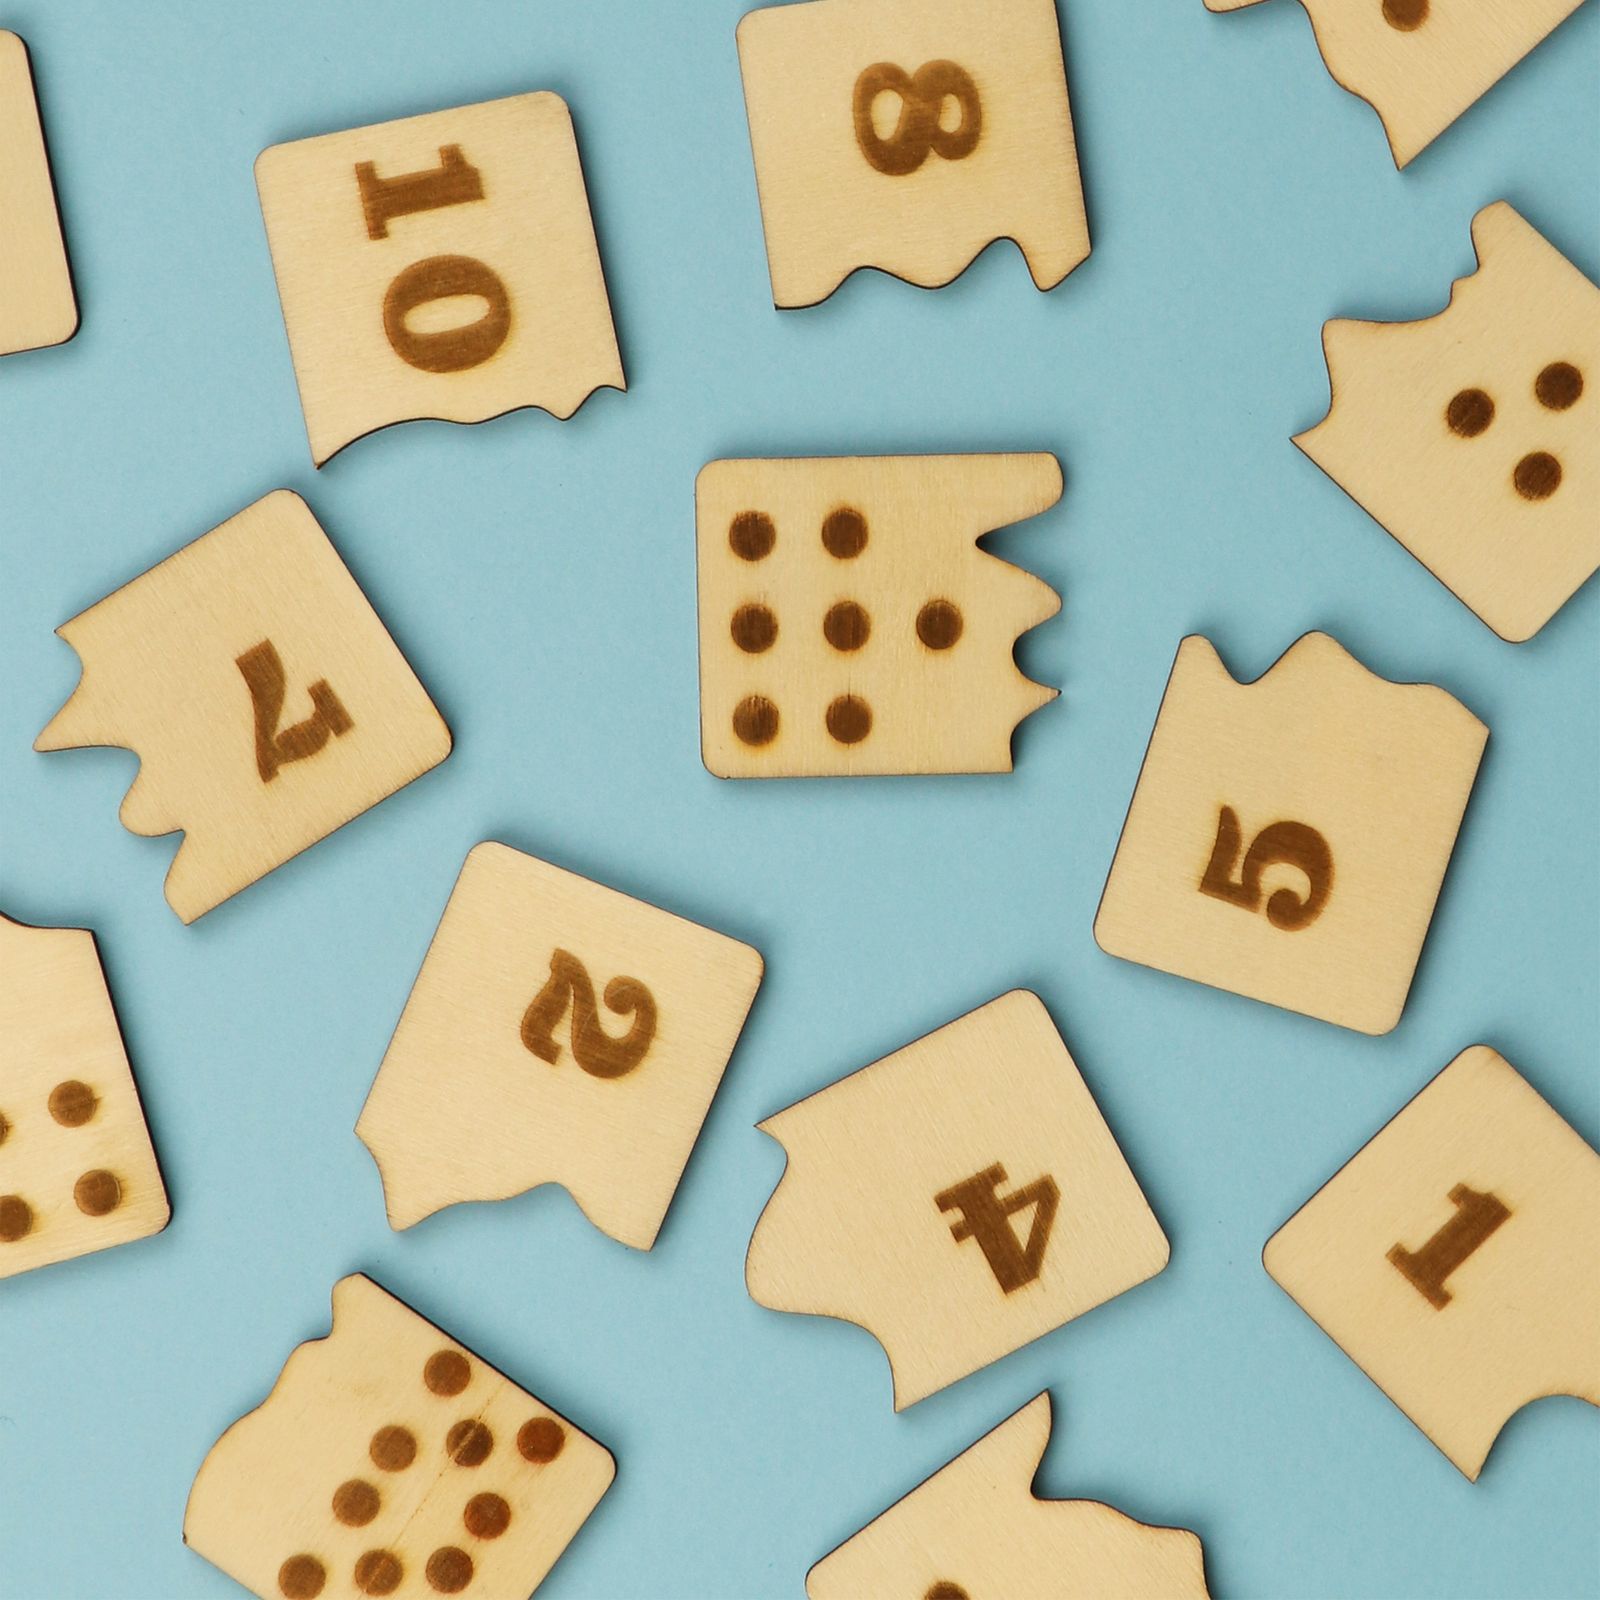 بازی آموزشی اعداد سنجاب وود مدل Dominoes number Puzzle -  - 3